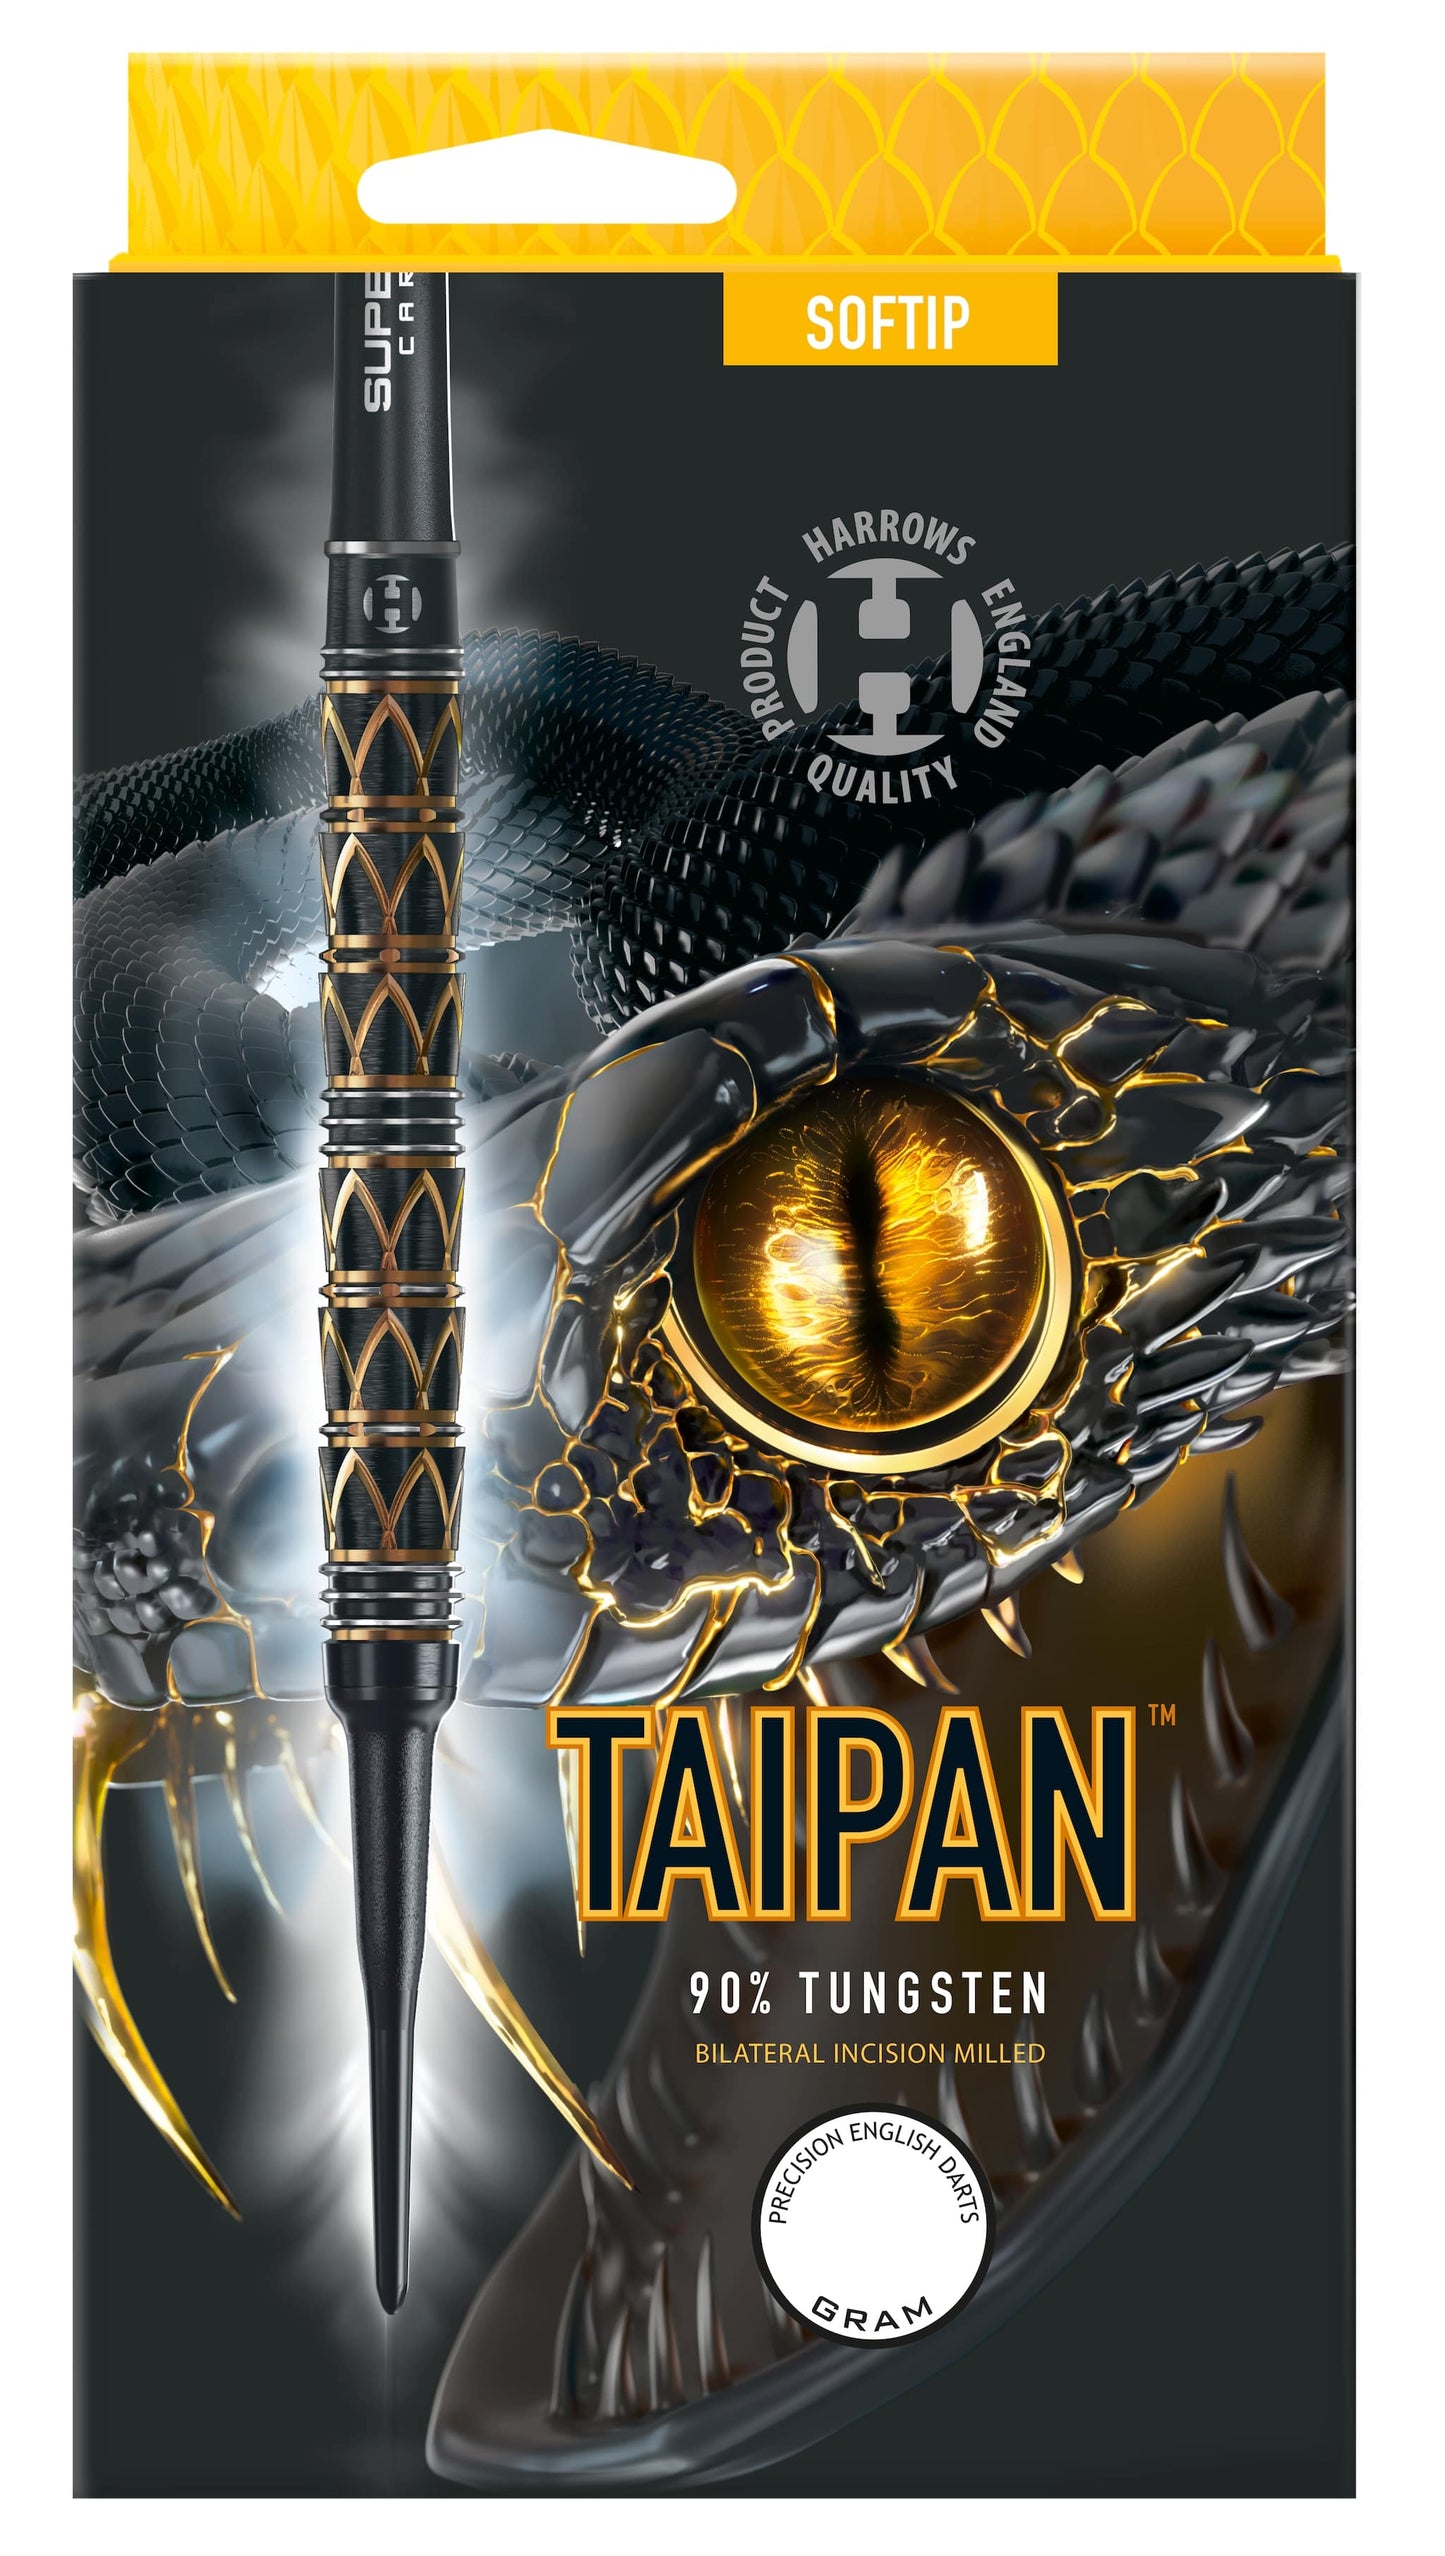 Harrows Taipan 90% Tungsten softiptikat